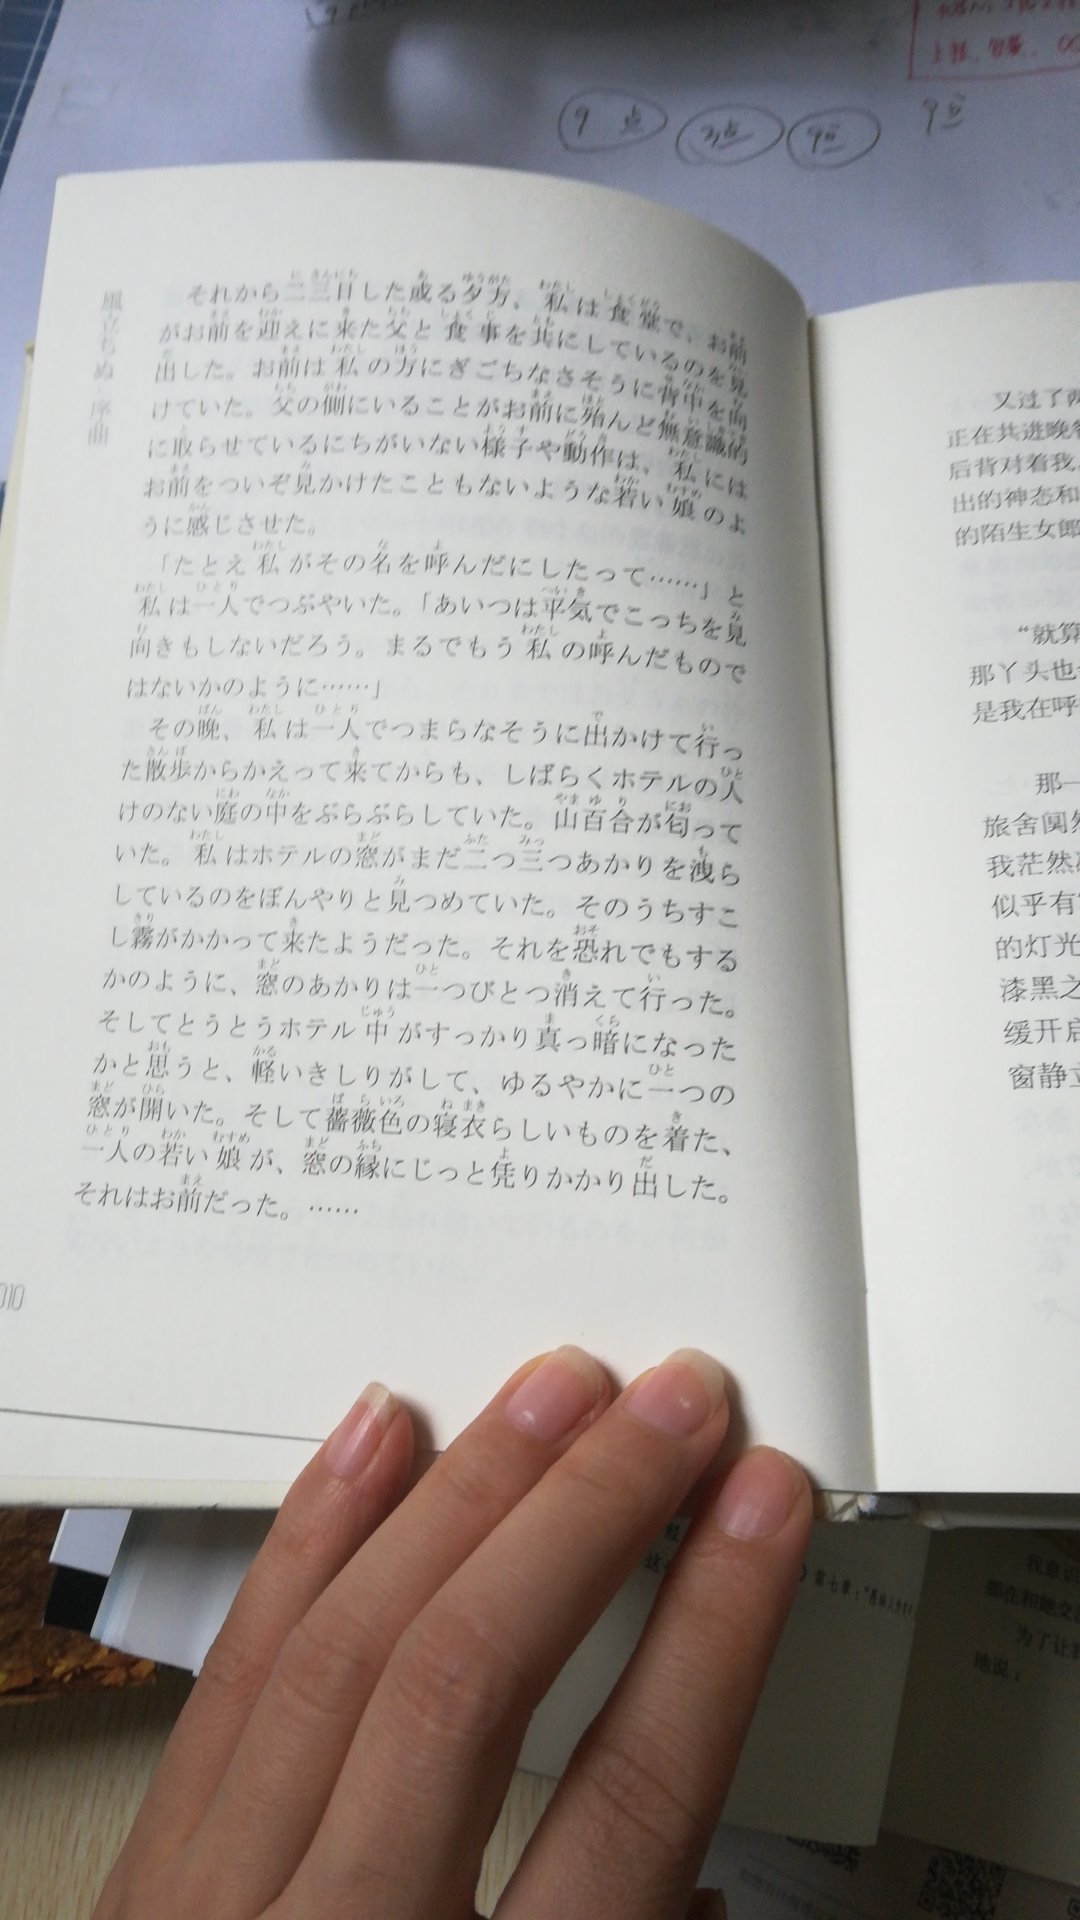 不错，纯日文版的，书尺寸不大，便于携带。